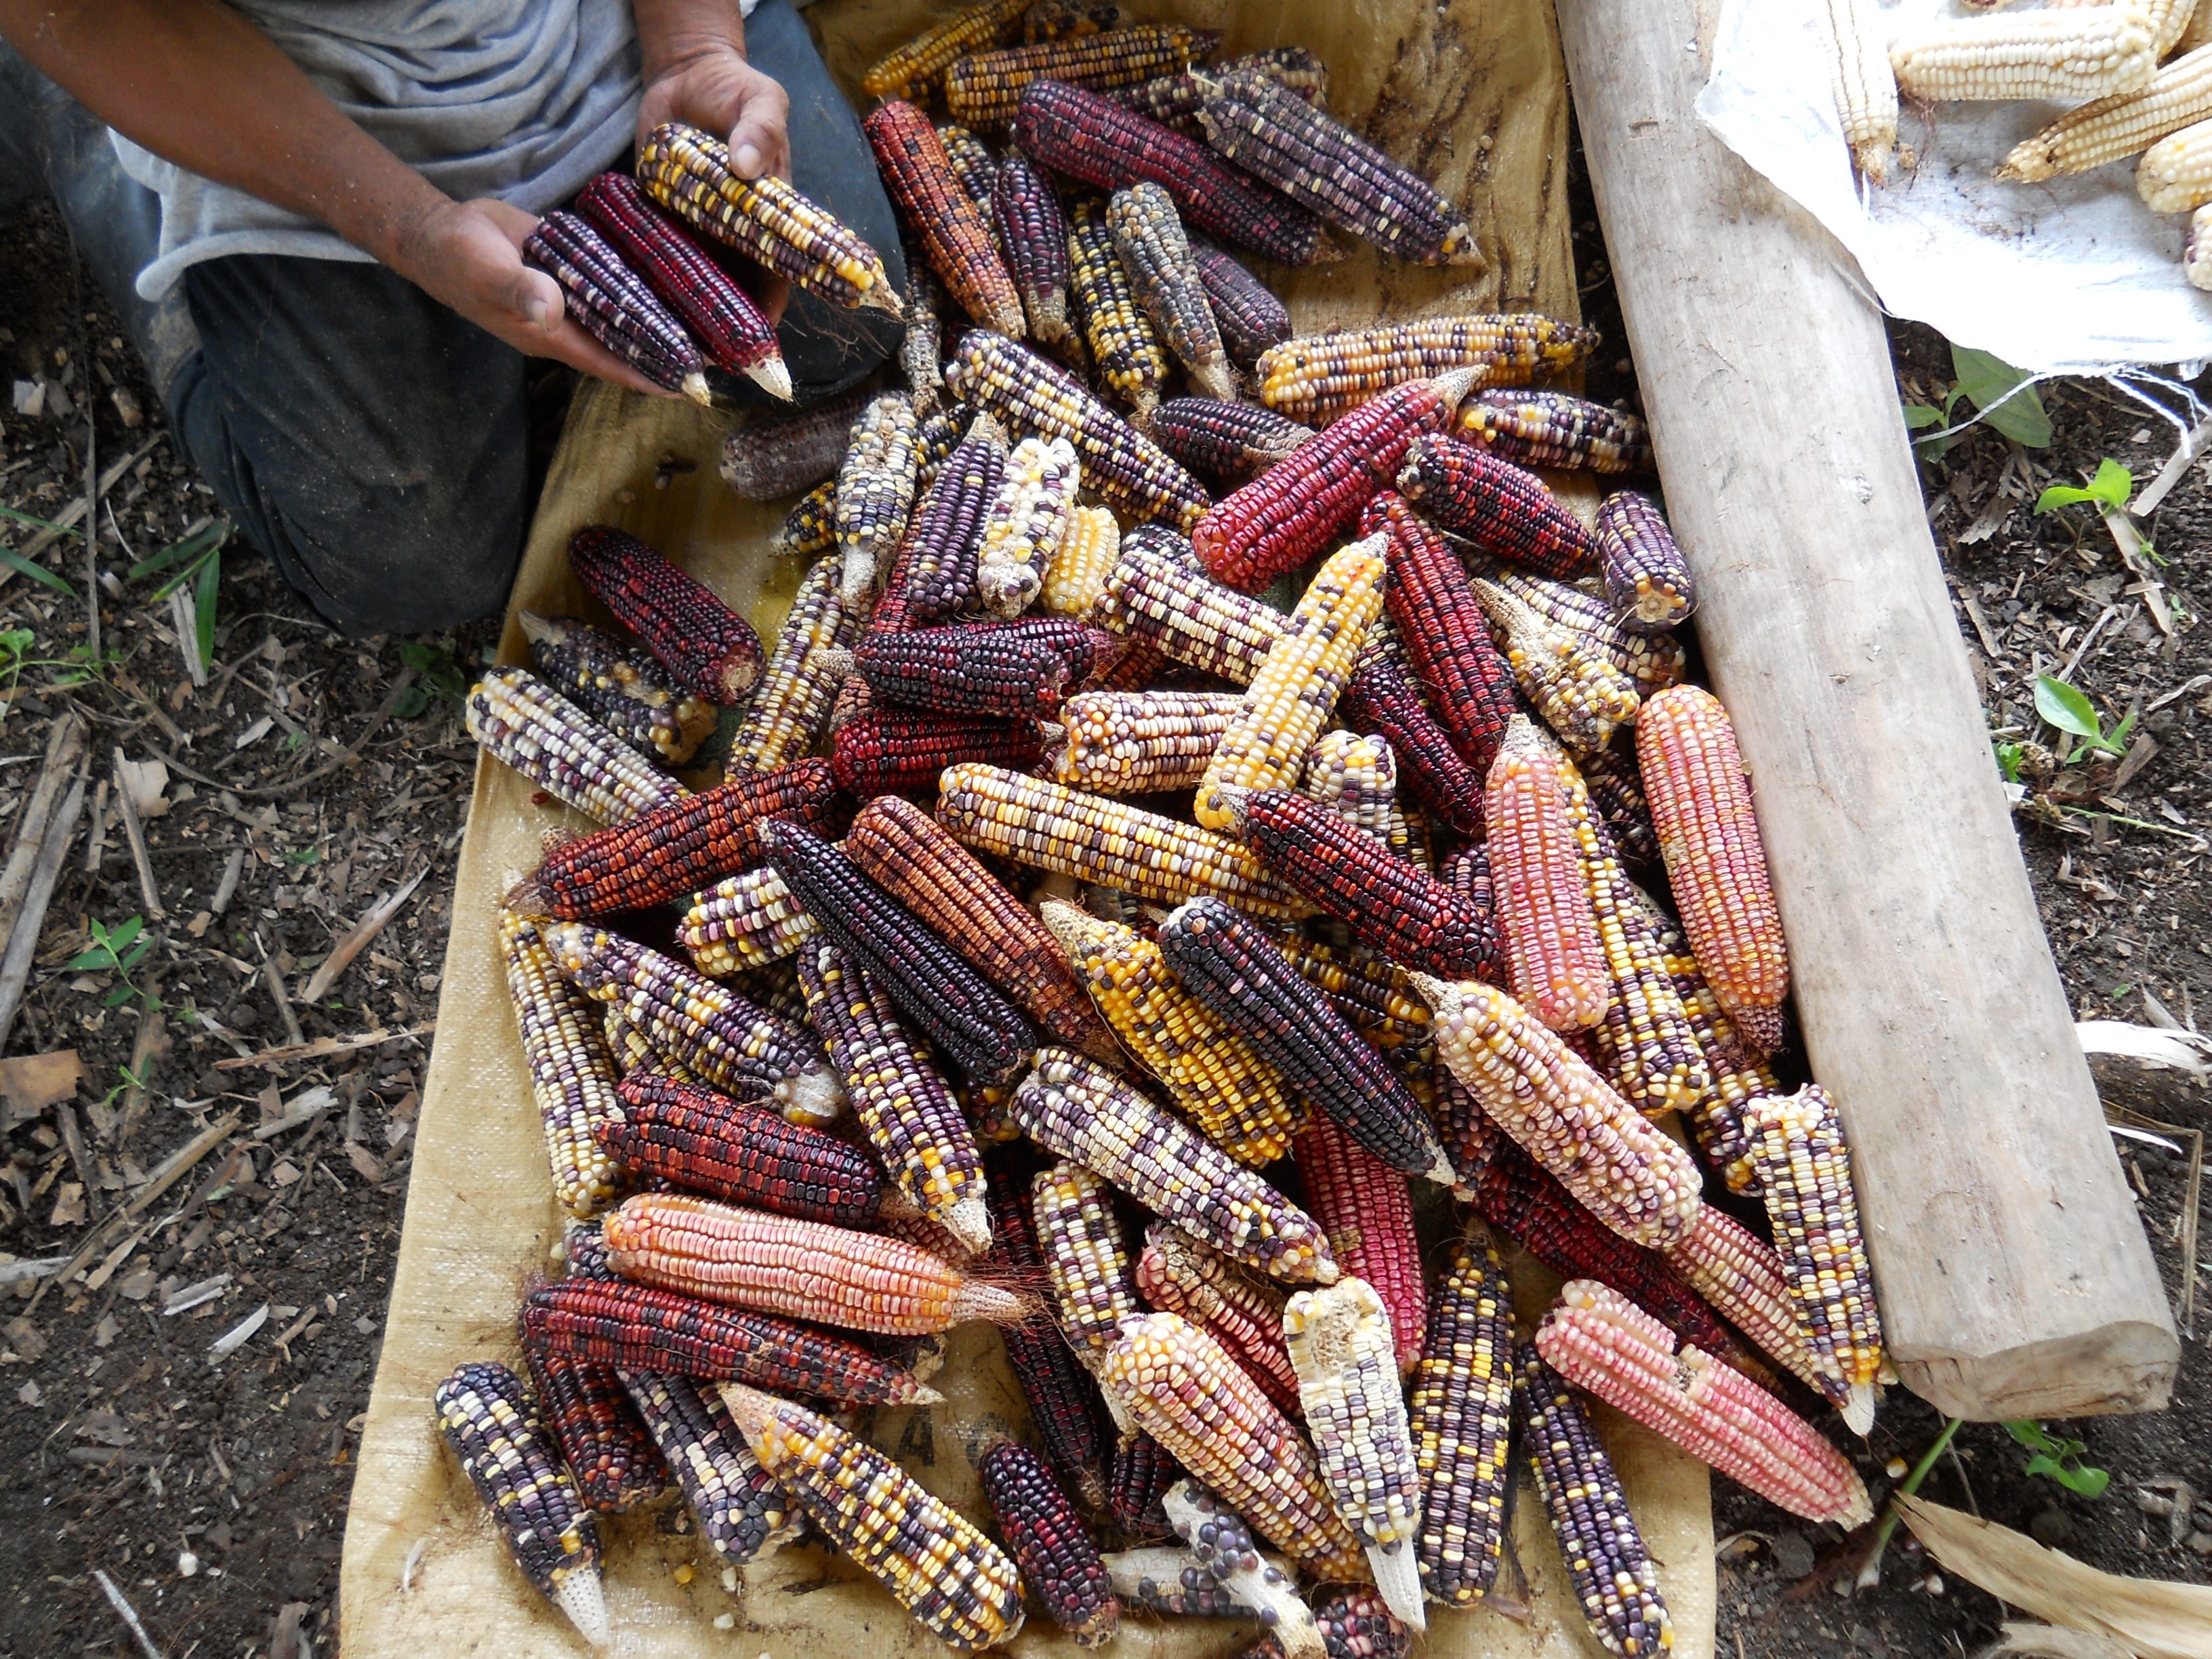 El maíz empezó a formar parte de la dieta en mesoamérica hace unos   años - Infobae